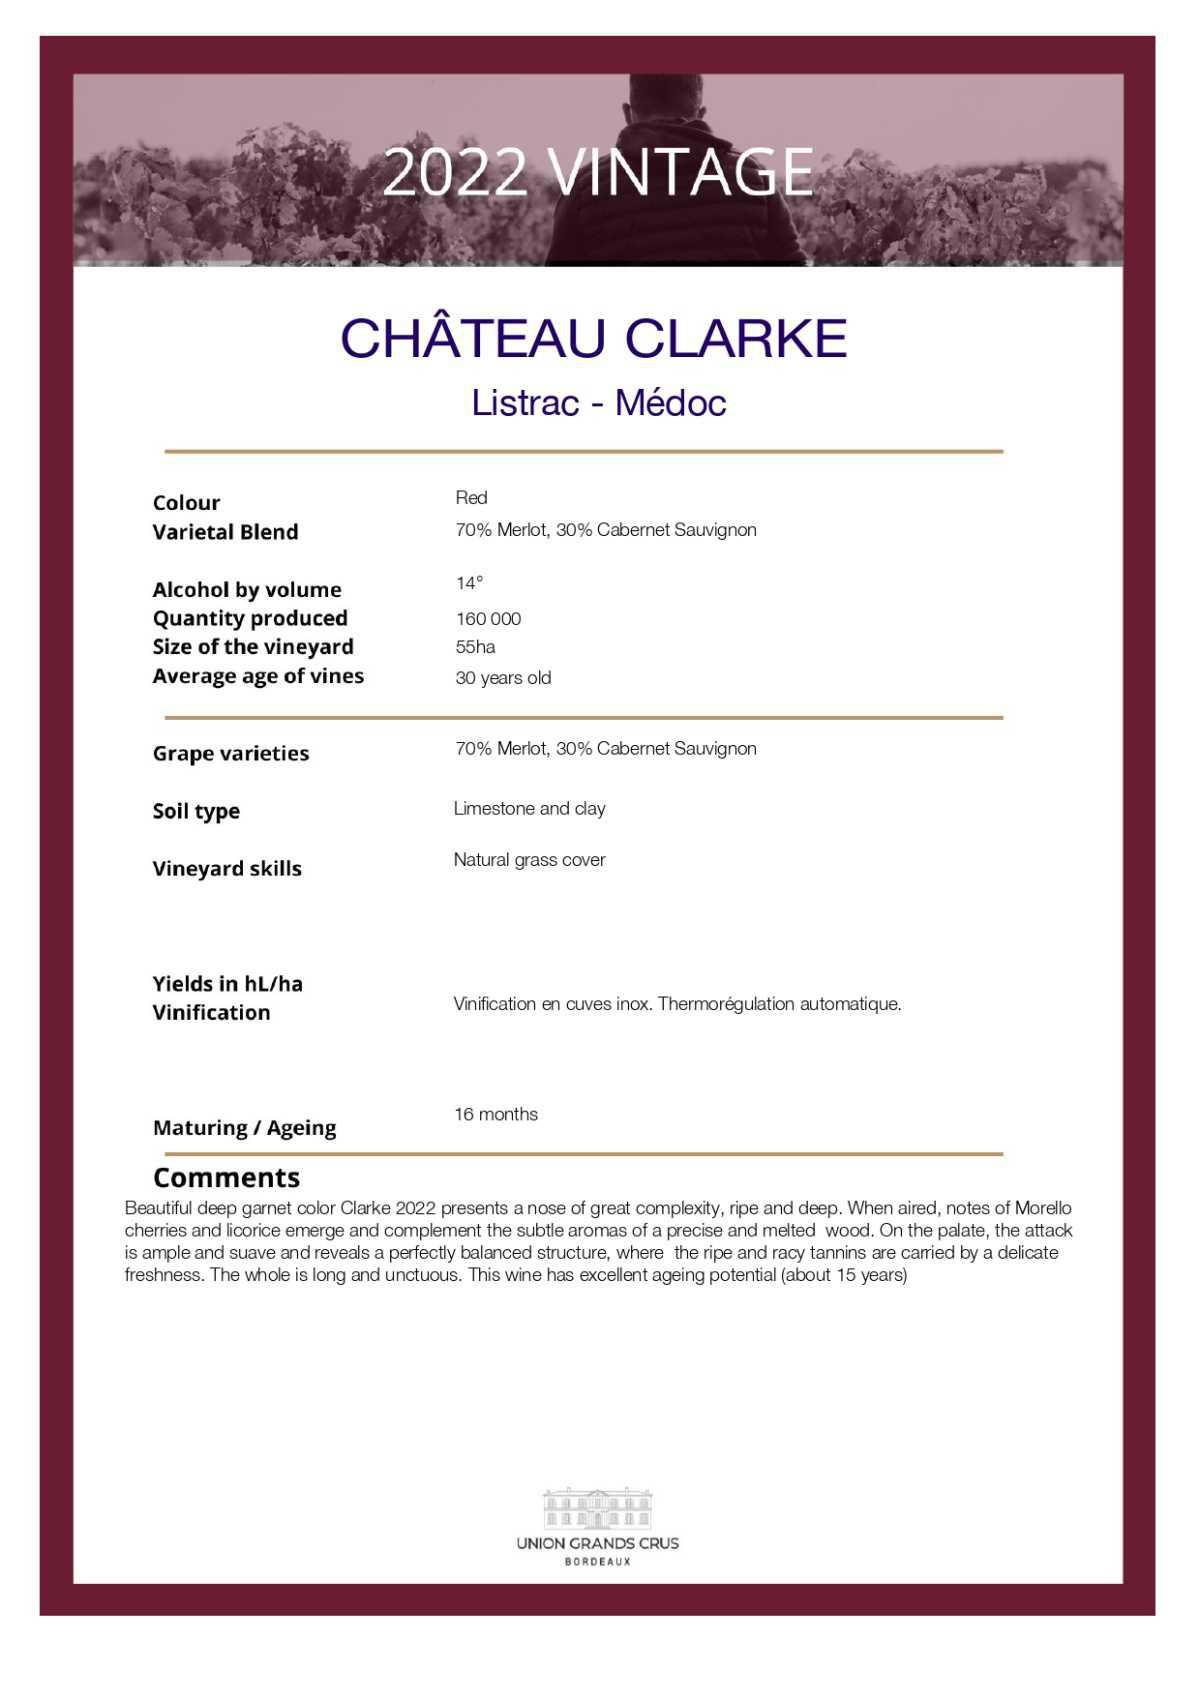 Château Clarke 